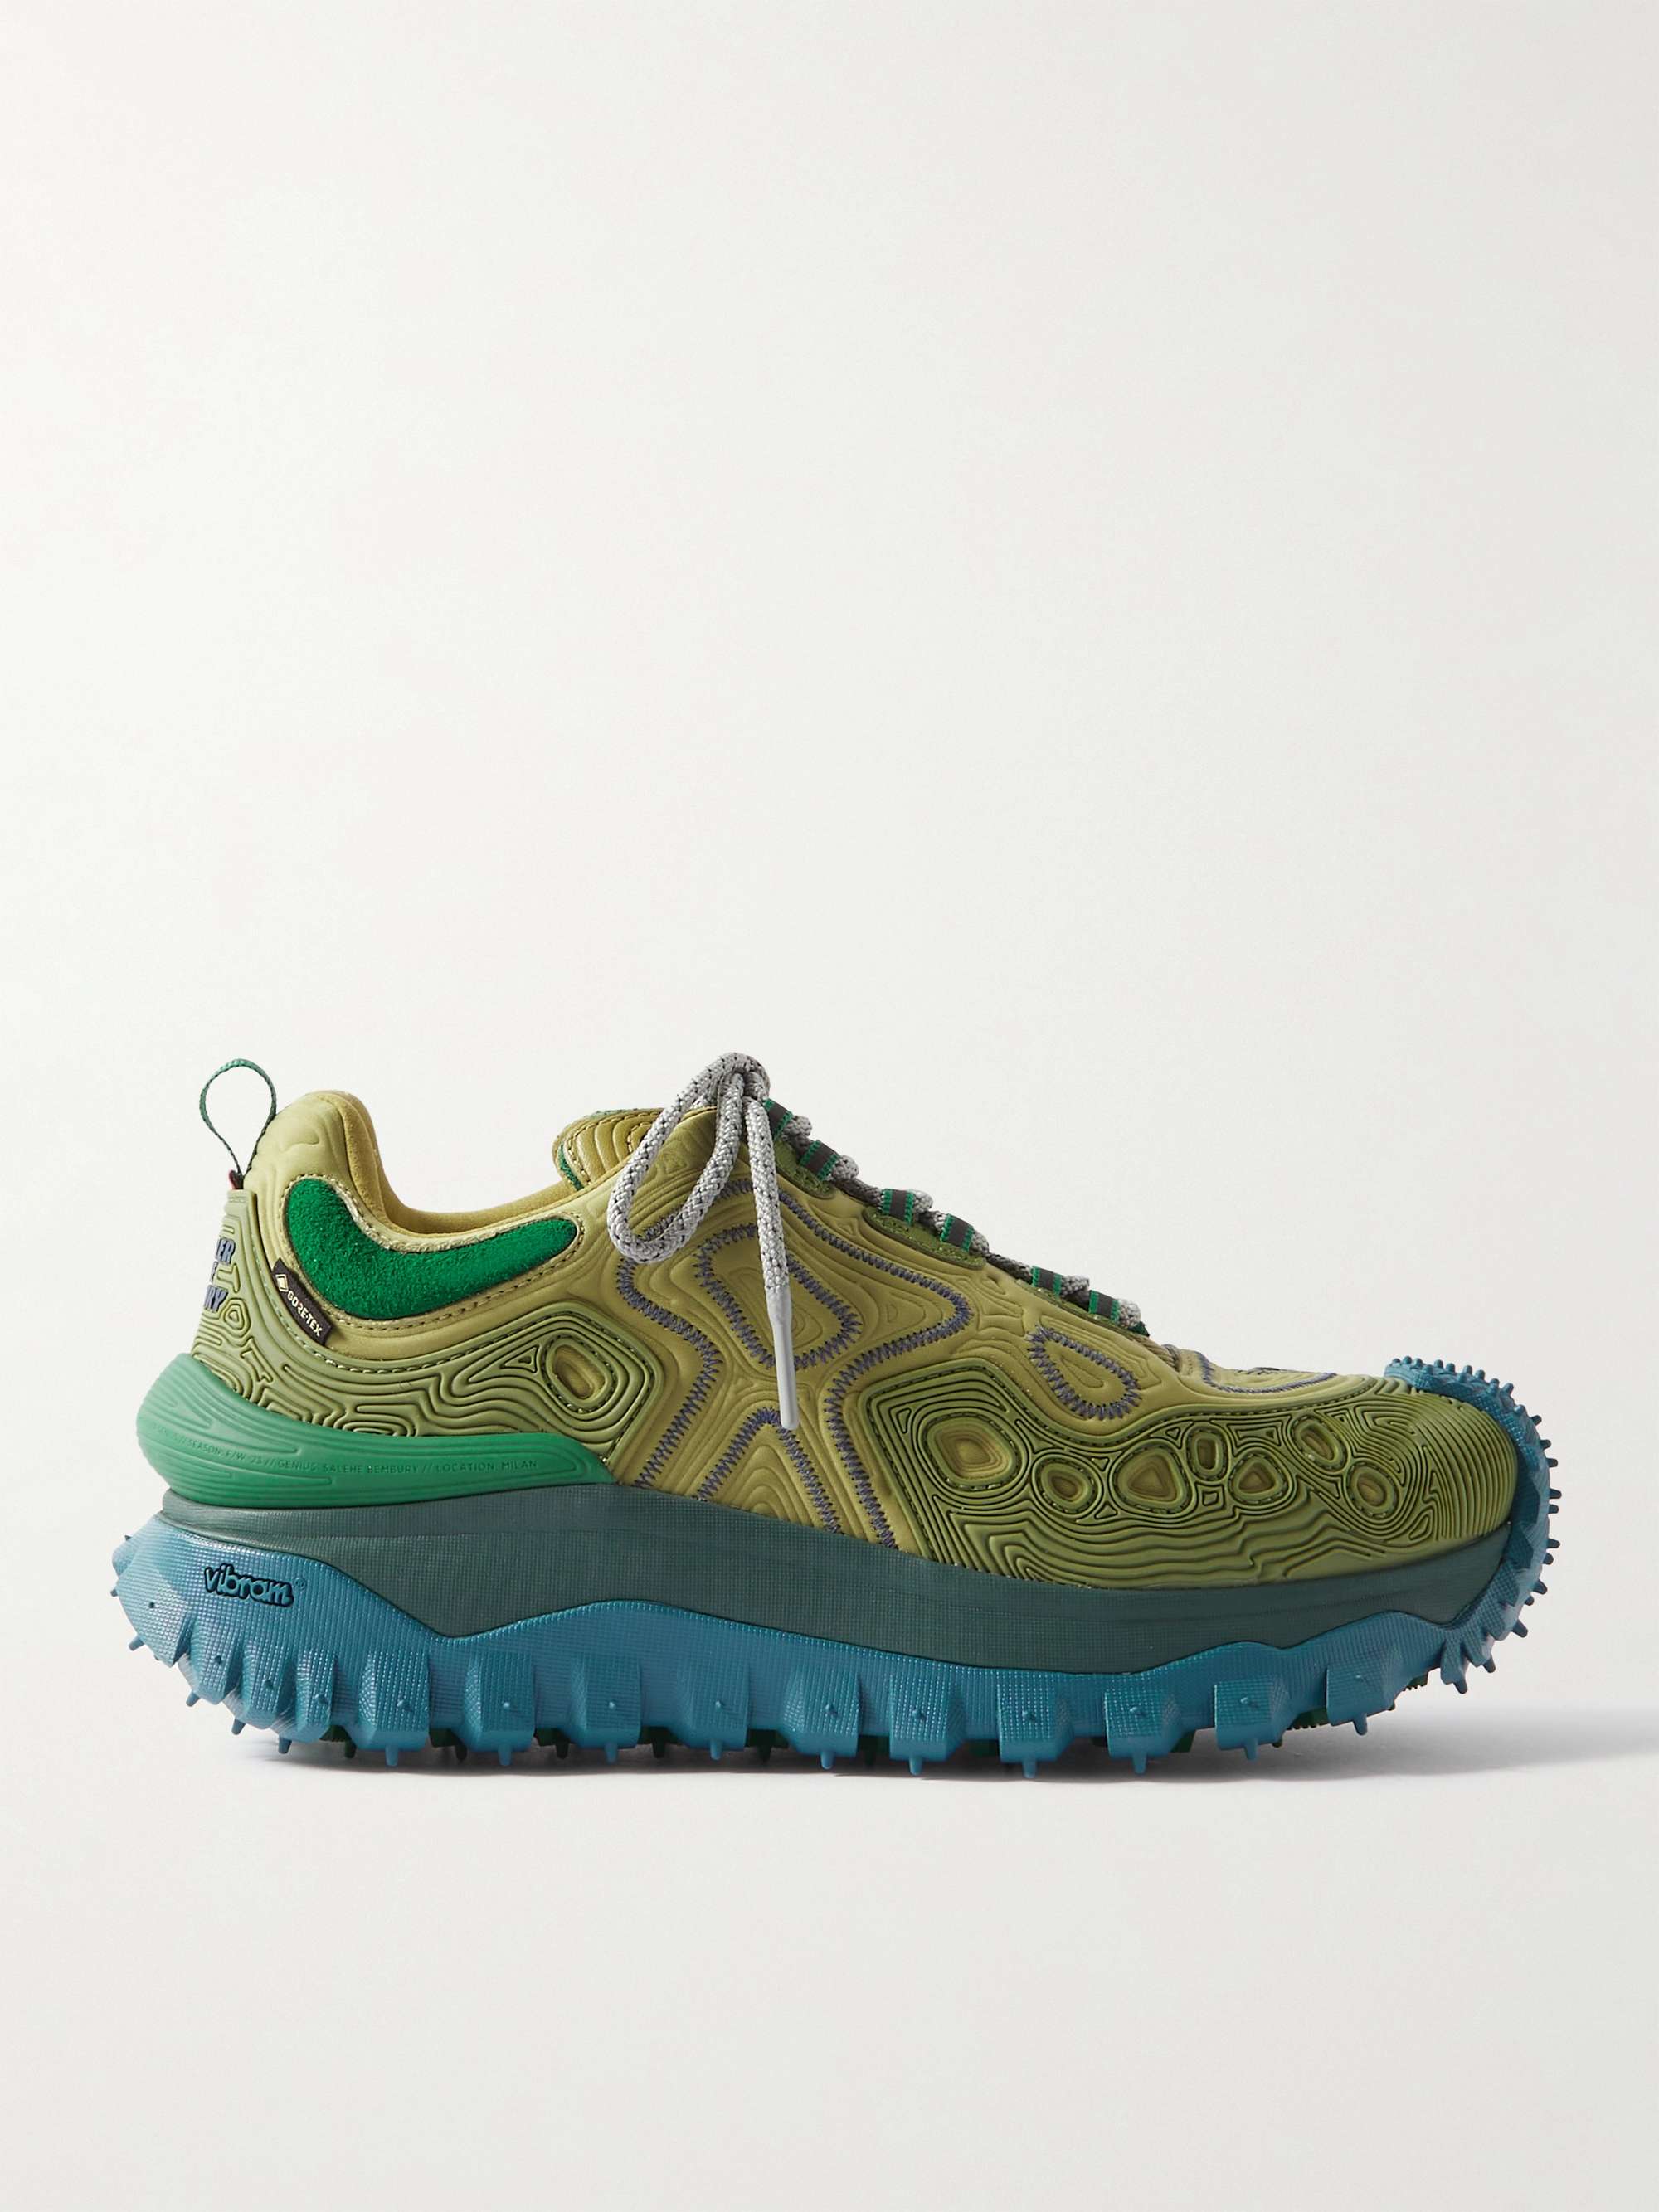 MONCLER GENIUS + Salehe Bembury Trailgrip Grain Rubber-Trimmed GORE-TEX®  Ballistic Nylon Sneakers for Men | MR PORTER